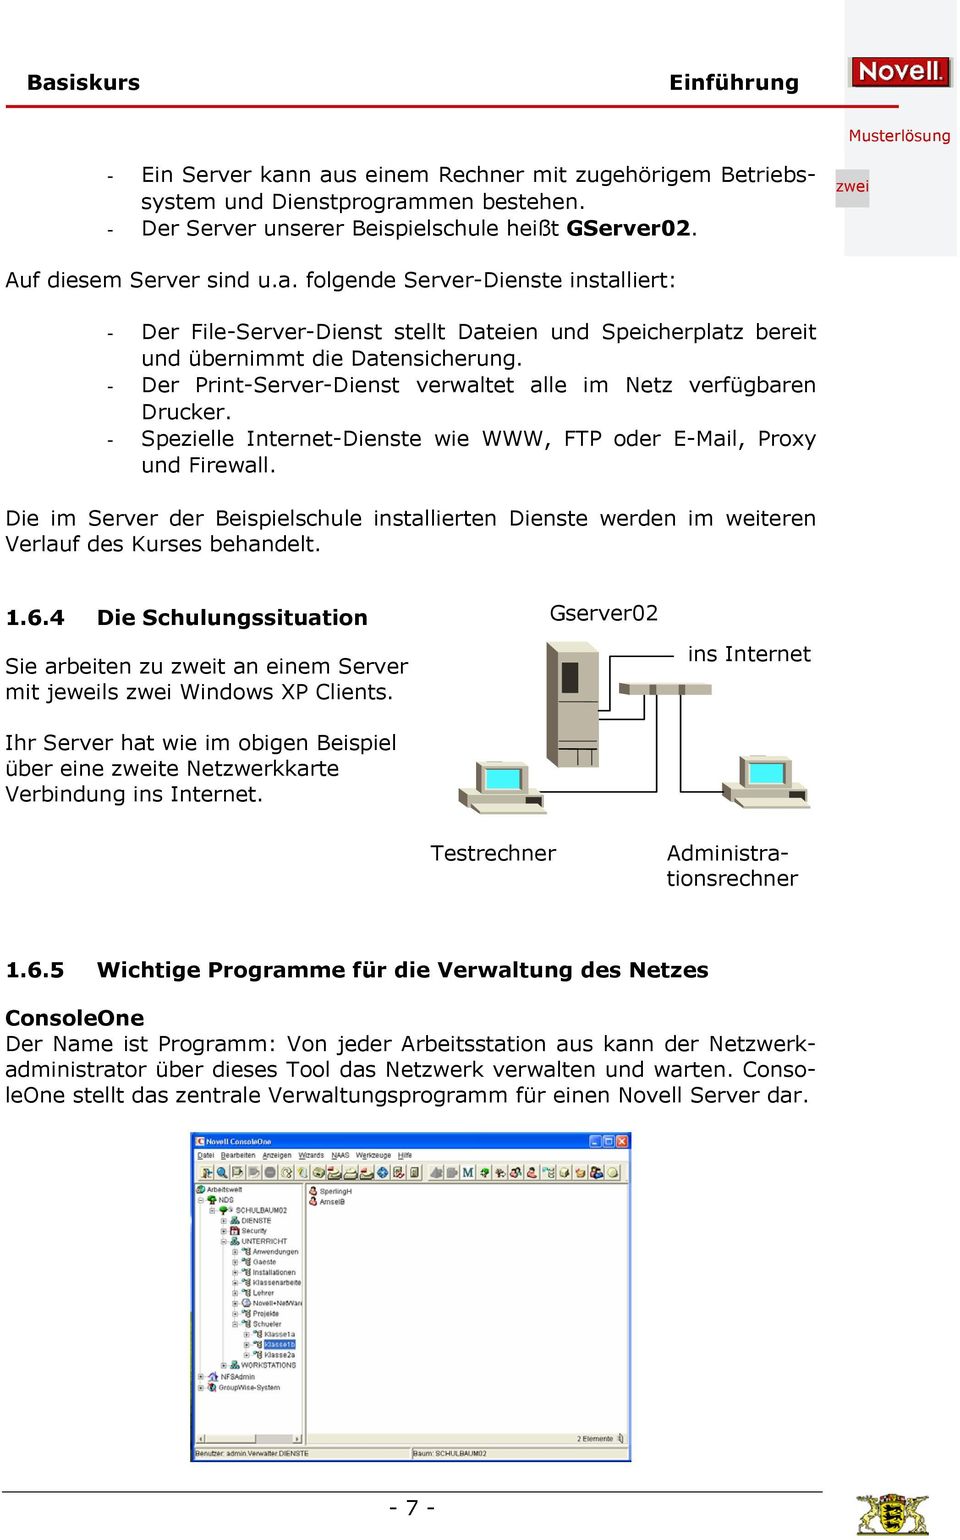 Die im Server der Beispielschule installierten Dienste werden im weiteren Verlauf des Kurses behandelt. 1.6.4 Die Schulungssituation Sie arbeiten zu t an einem Server mit jeweils Windows XP Clients.